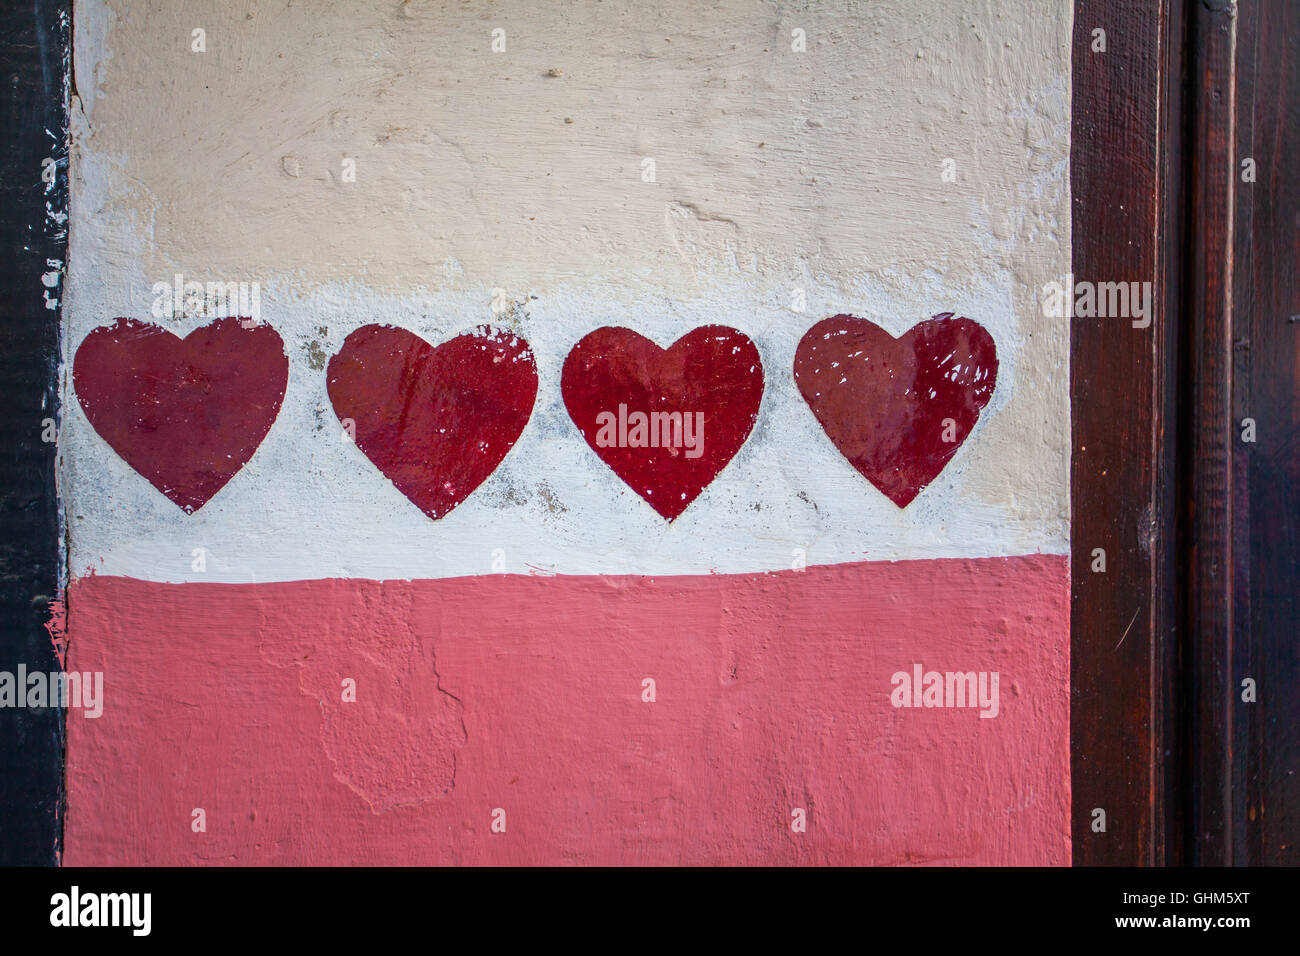 Rote Herzen auf eine bunte Wand Hintergrund gemalt Stockfoto